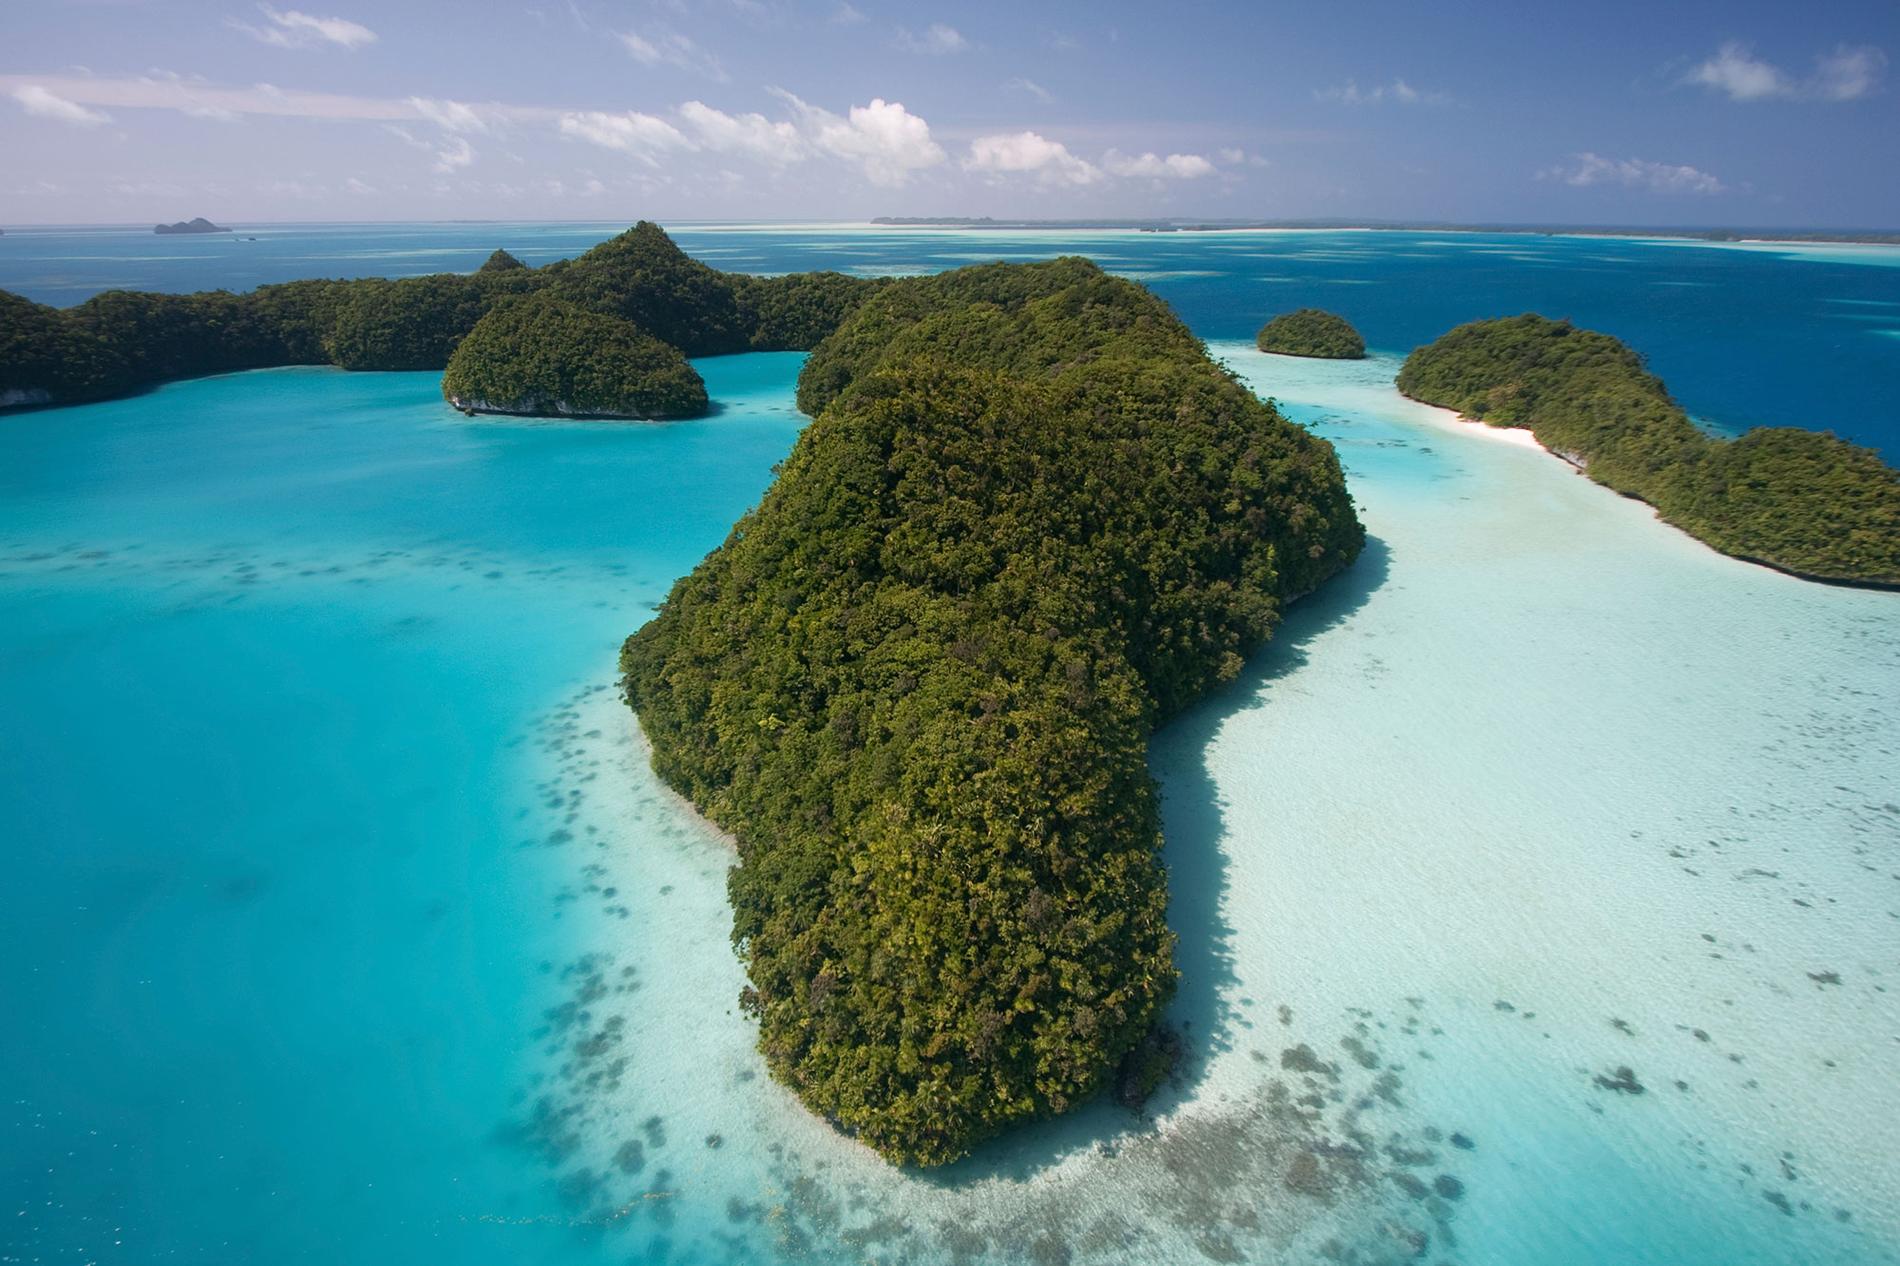 Rock Islands i Palau blir ett av stoppen under den två år långa resan.